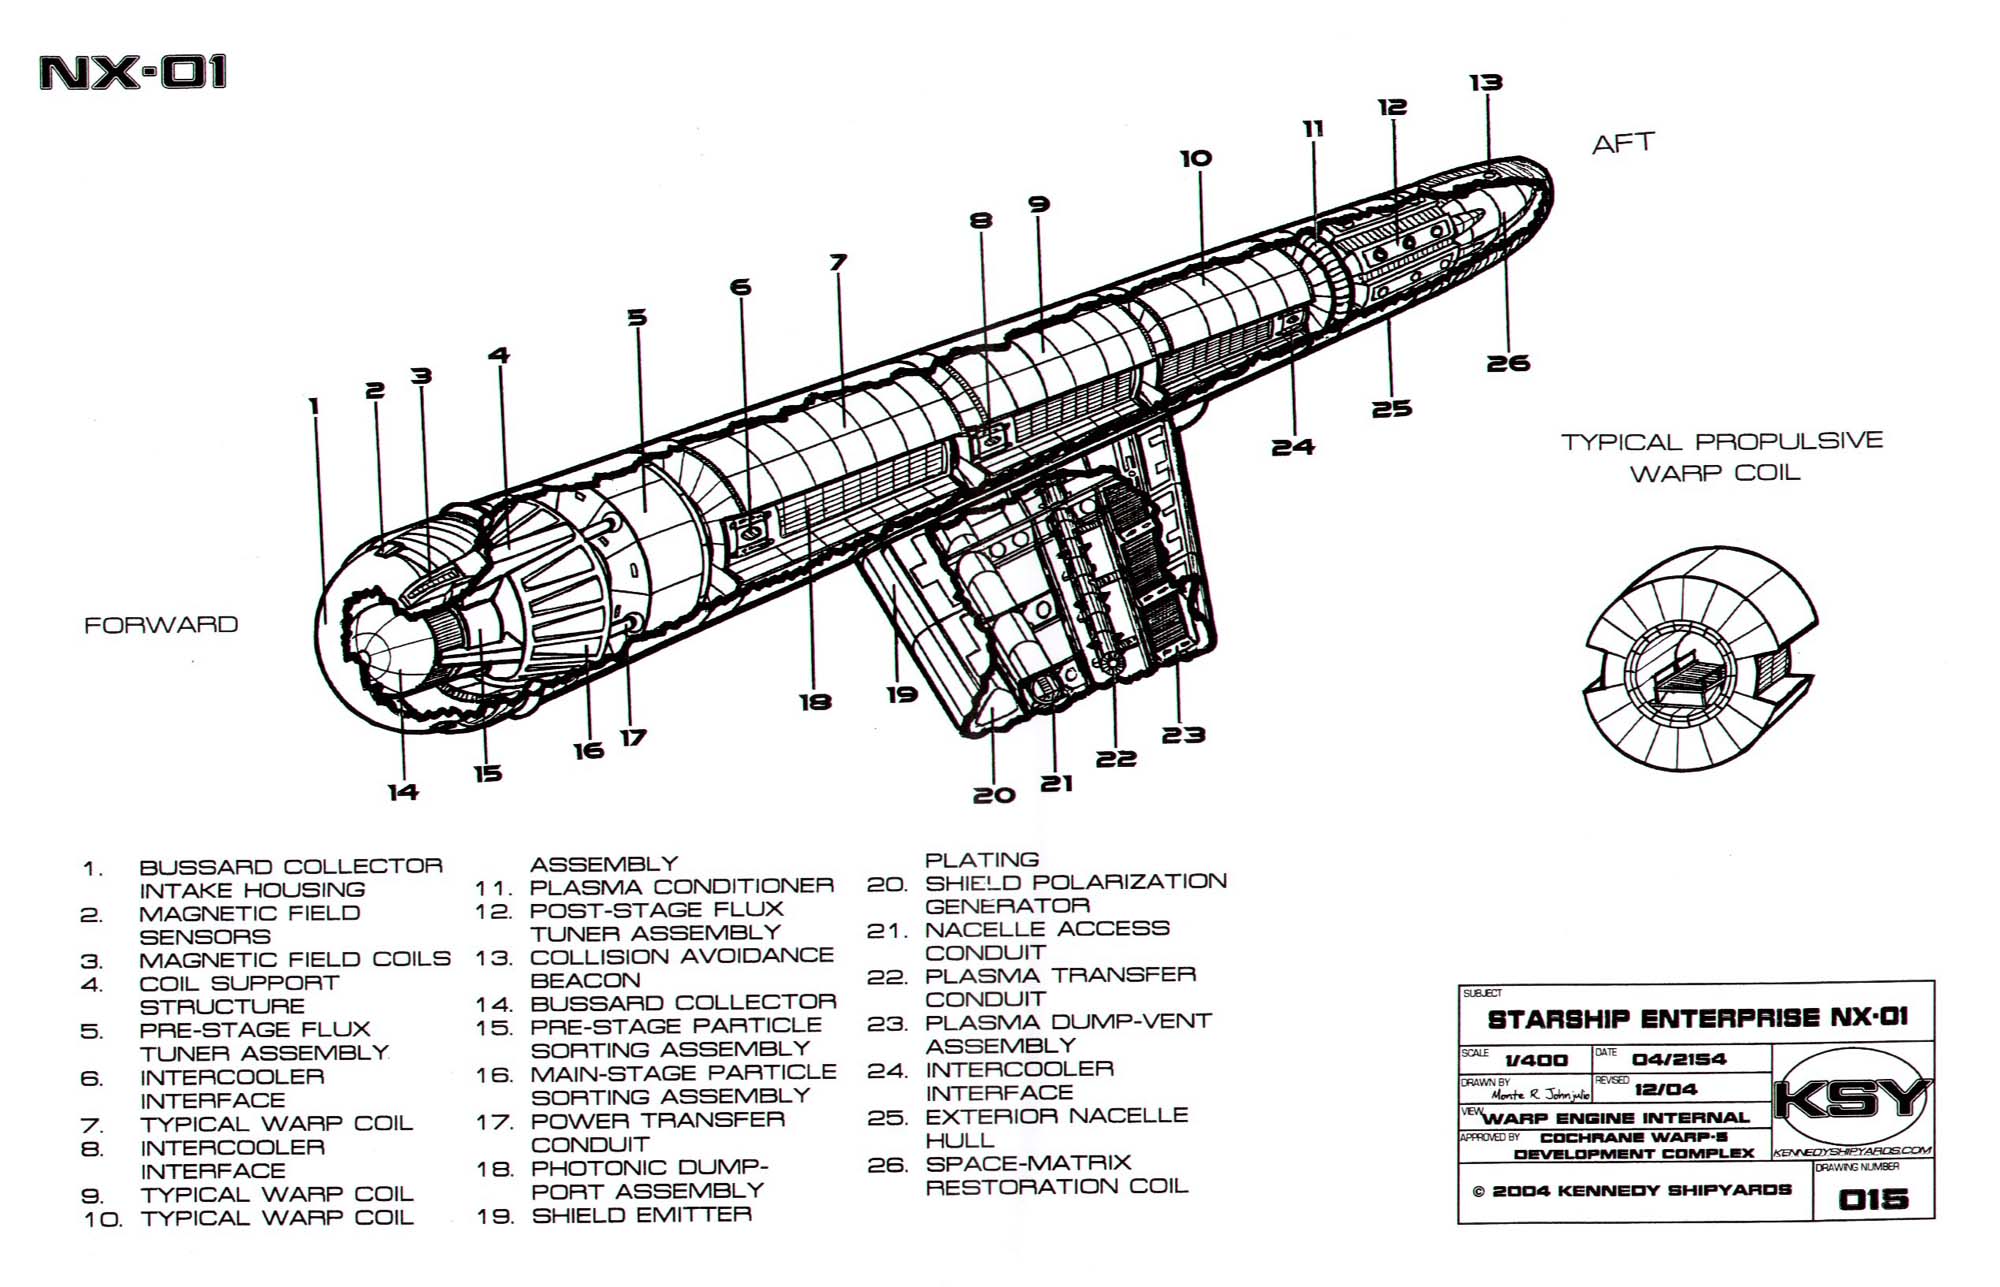 starfleet-vessel-enterprise-nx-01-sheet-15.jpg